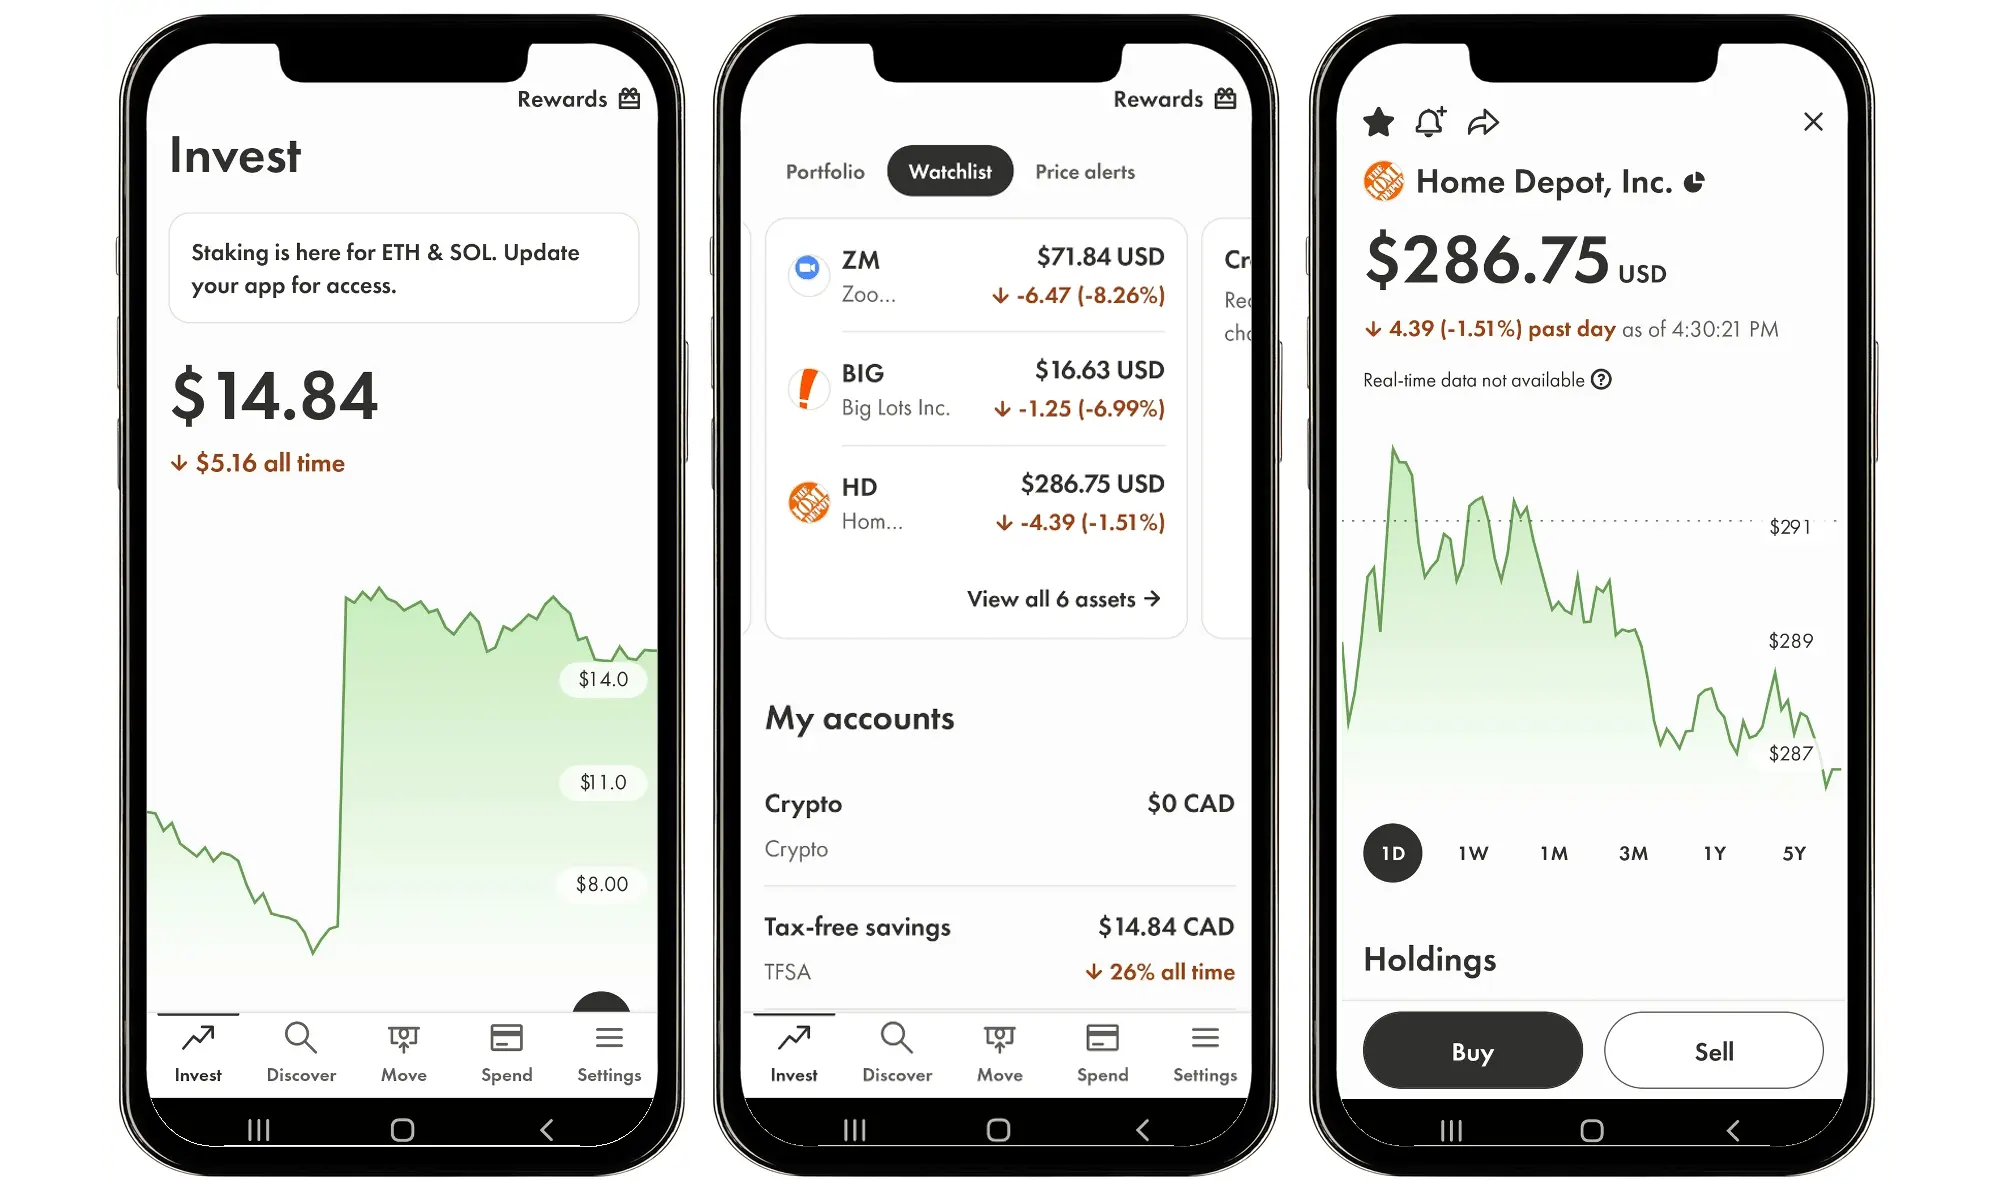 Wealthsimple mobile app screenshots